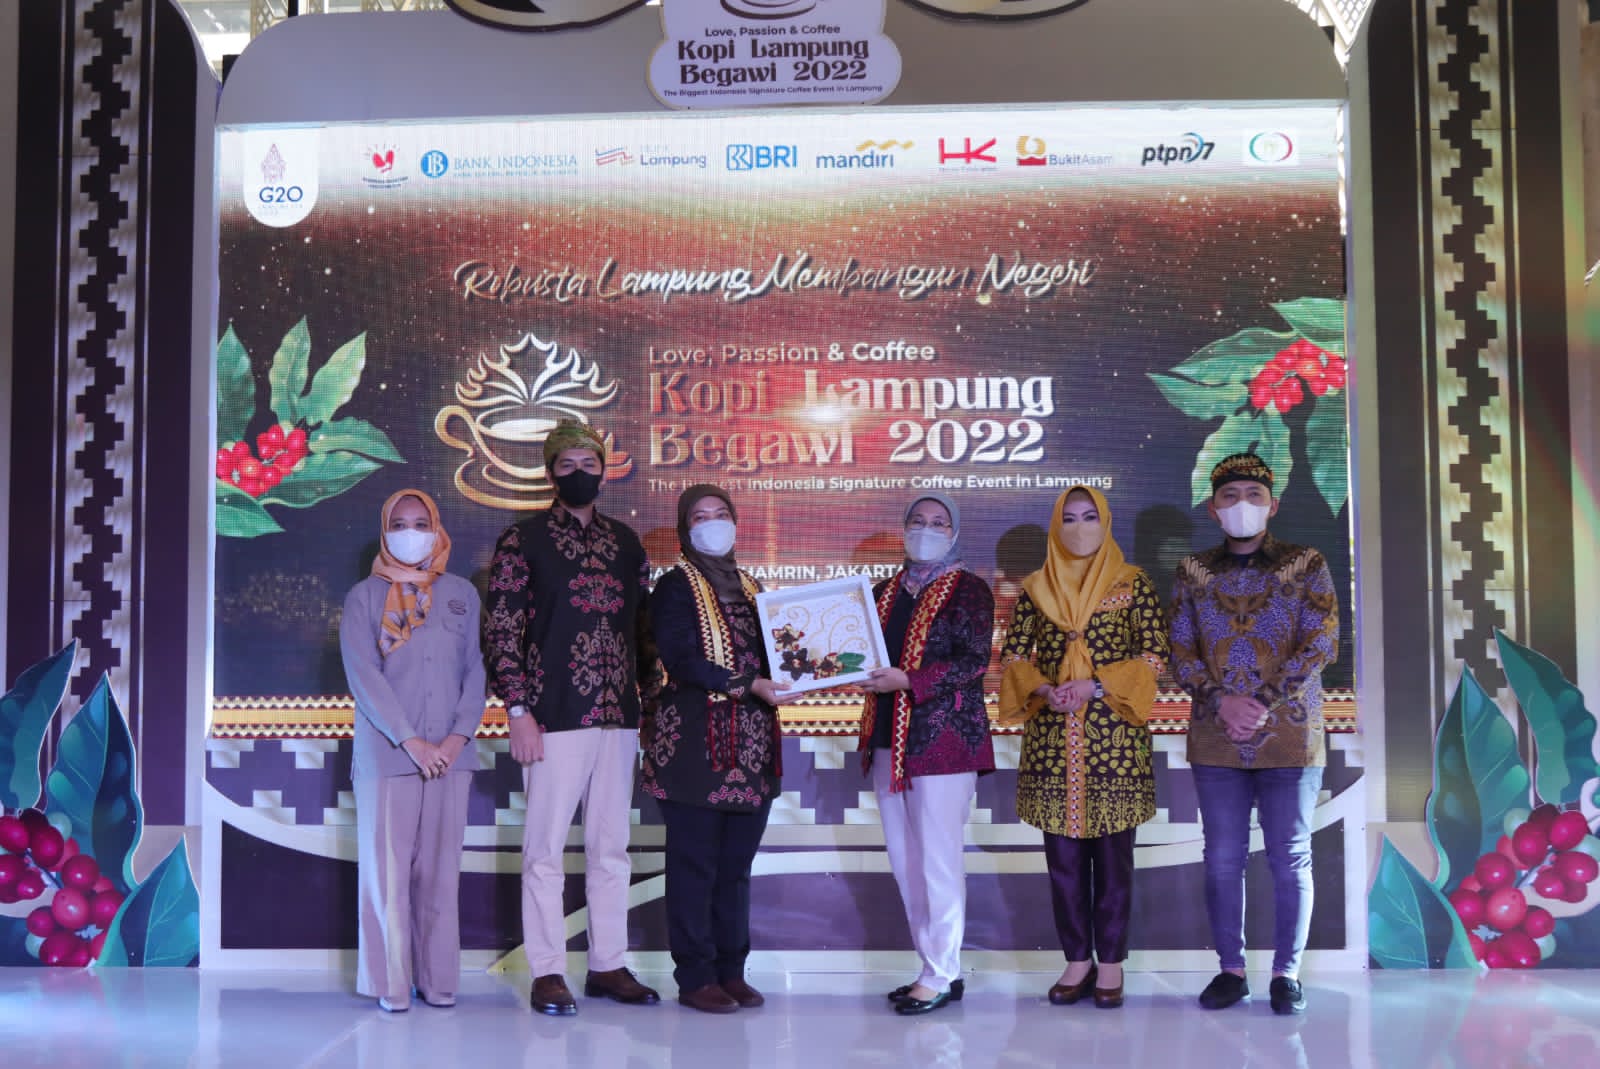 Main Event Kopi Lampung Begawi, Wagub Chusnunia Ajak Semua Pihak Wujudkan Kopi Lampung Berjaya